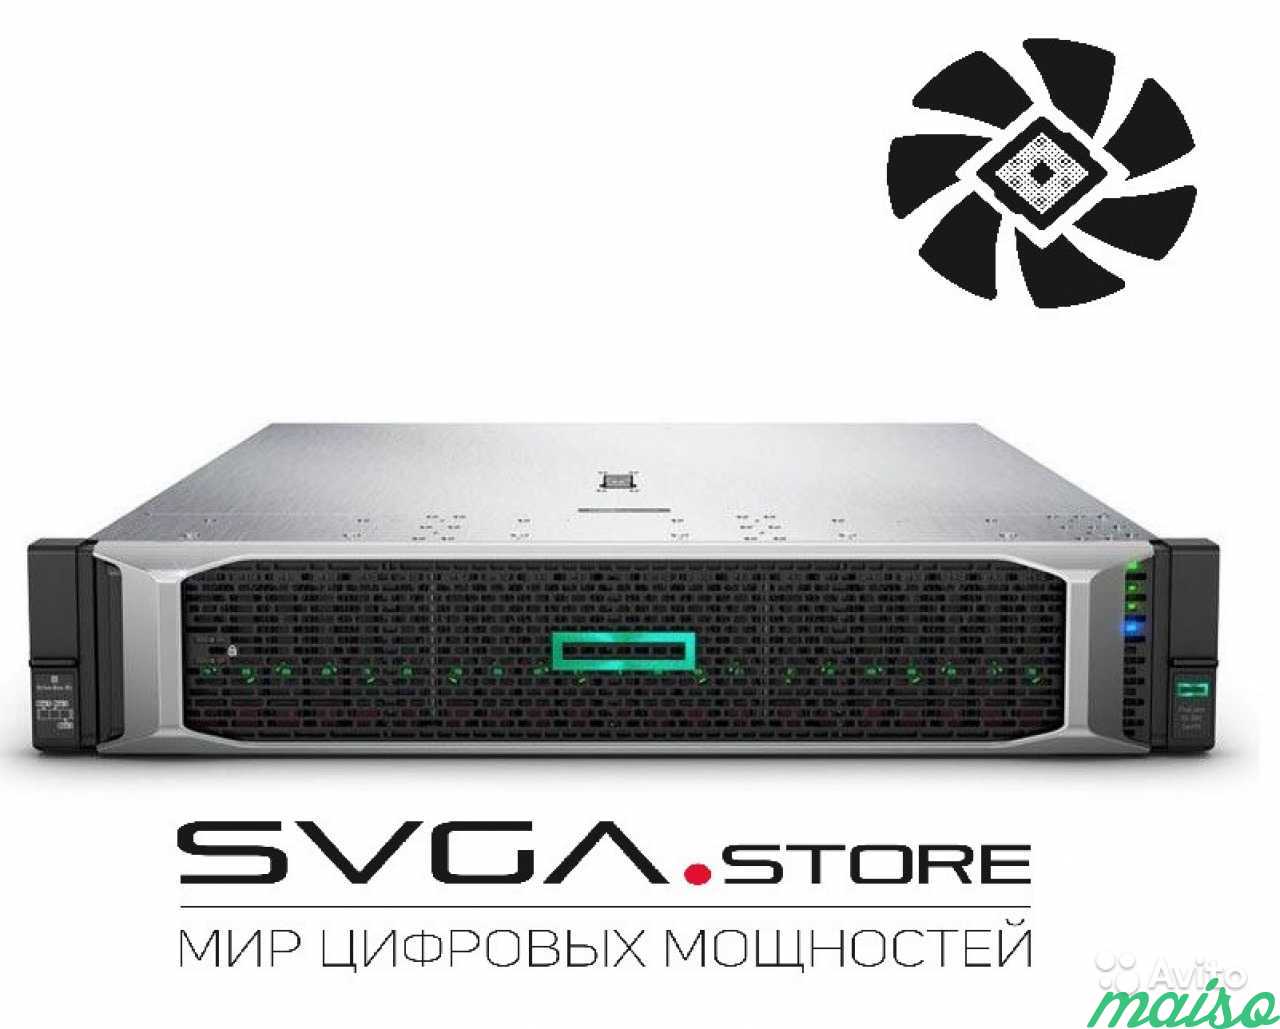 Сервер HP DL385 P09707-B21 878718-B21 878716-B21 в Санкт-Петербурге. Фото 1